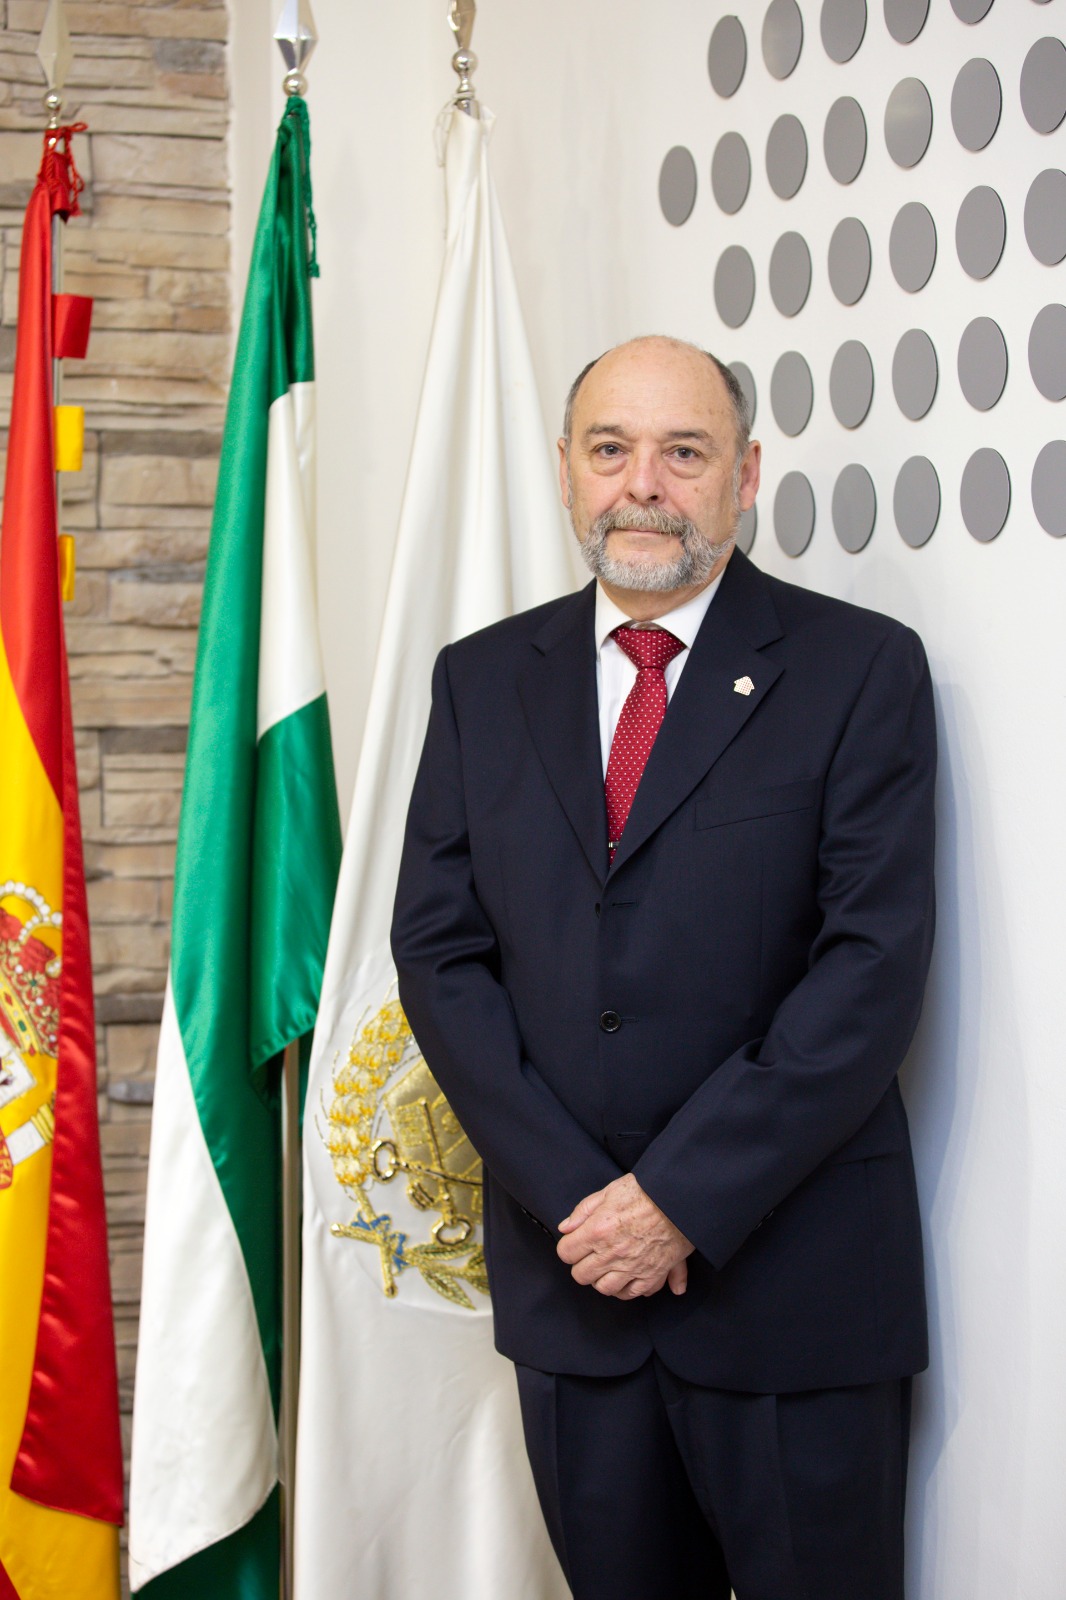 D. Alberto Escudero Martínez